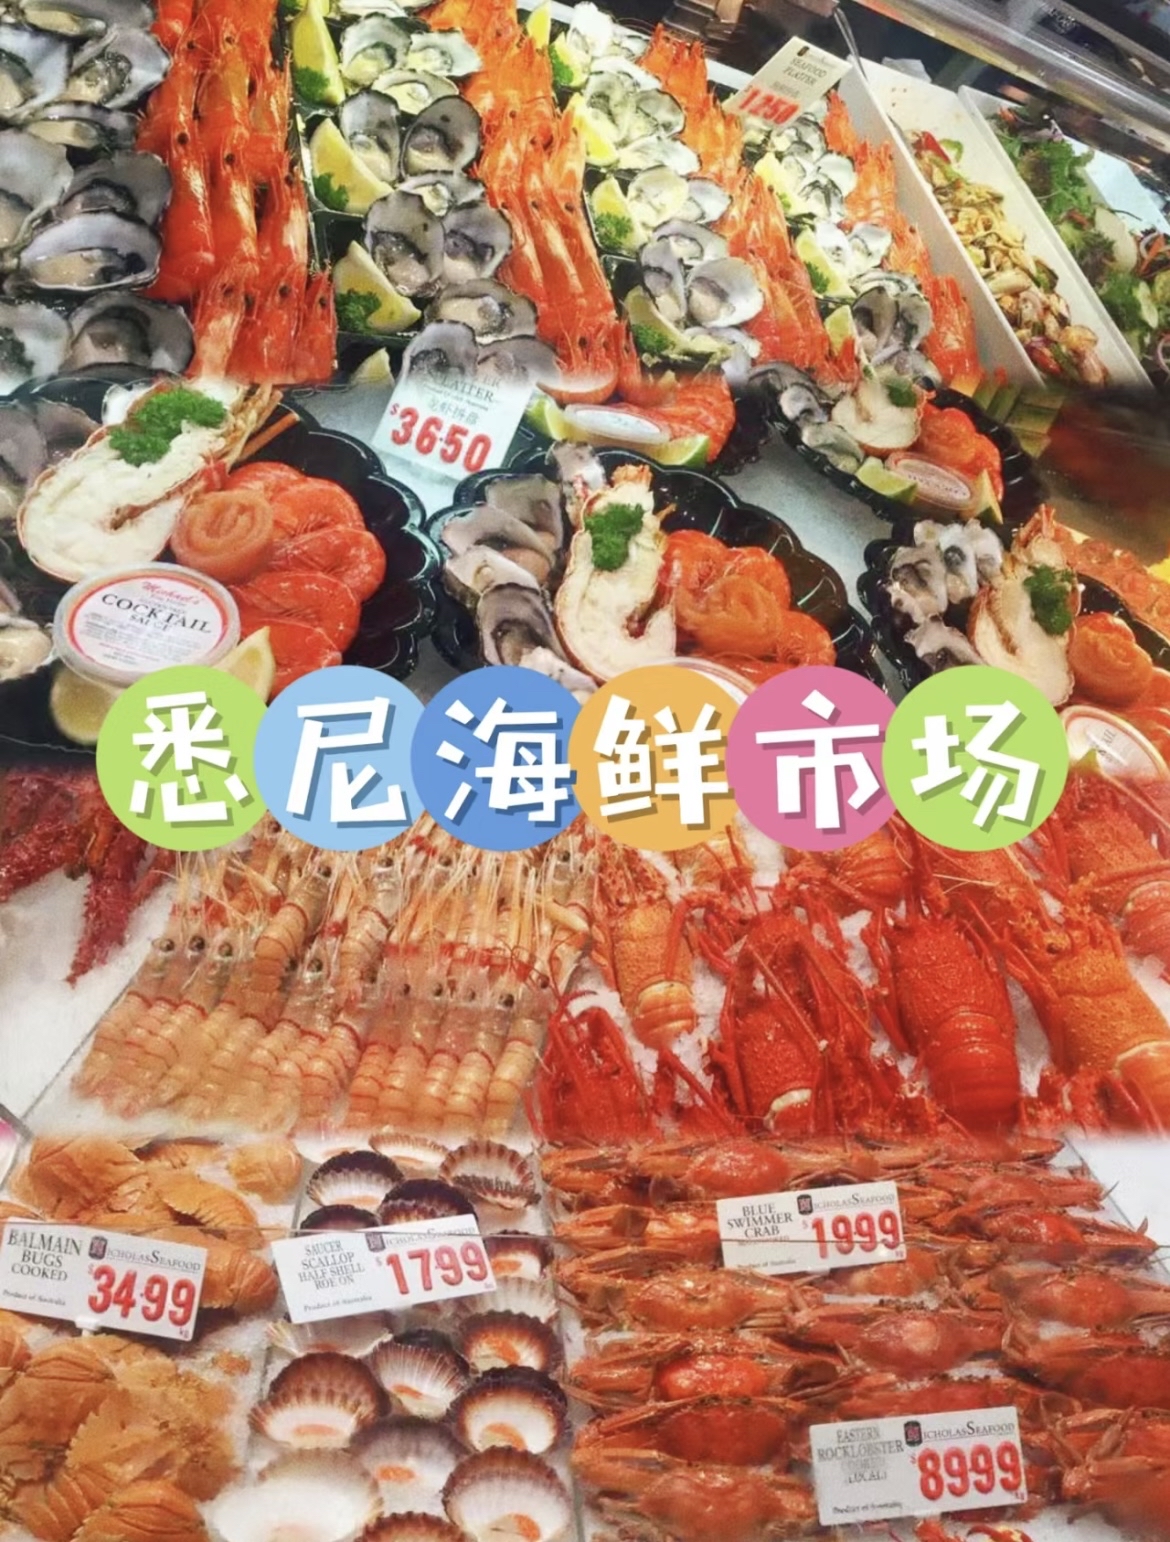 悉尼海鲜市场☝️寻找新鲜海鲜的终极目的